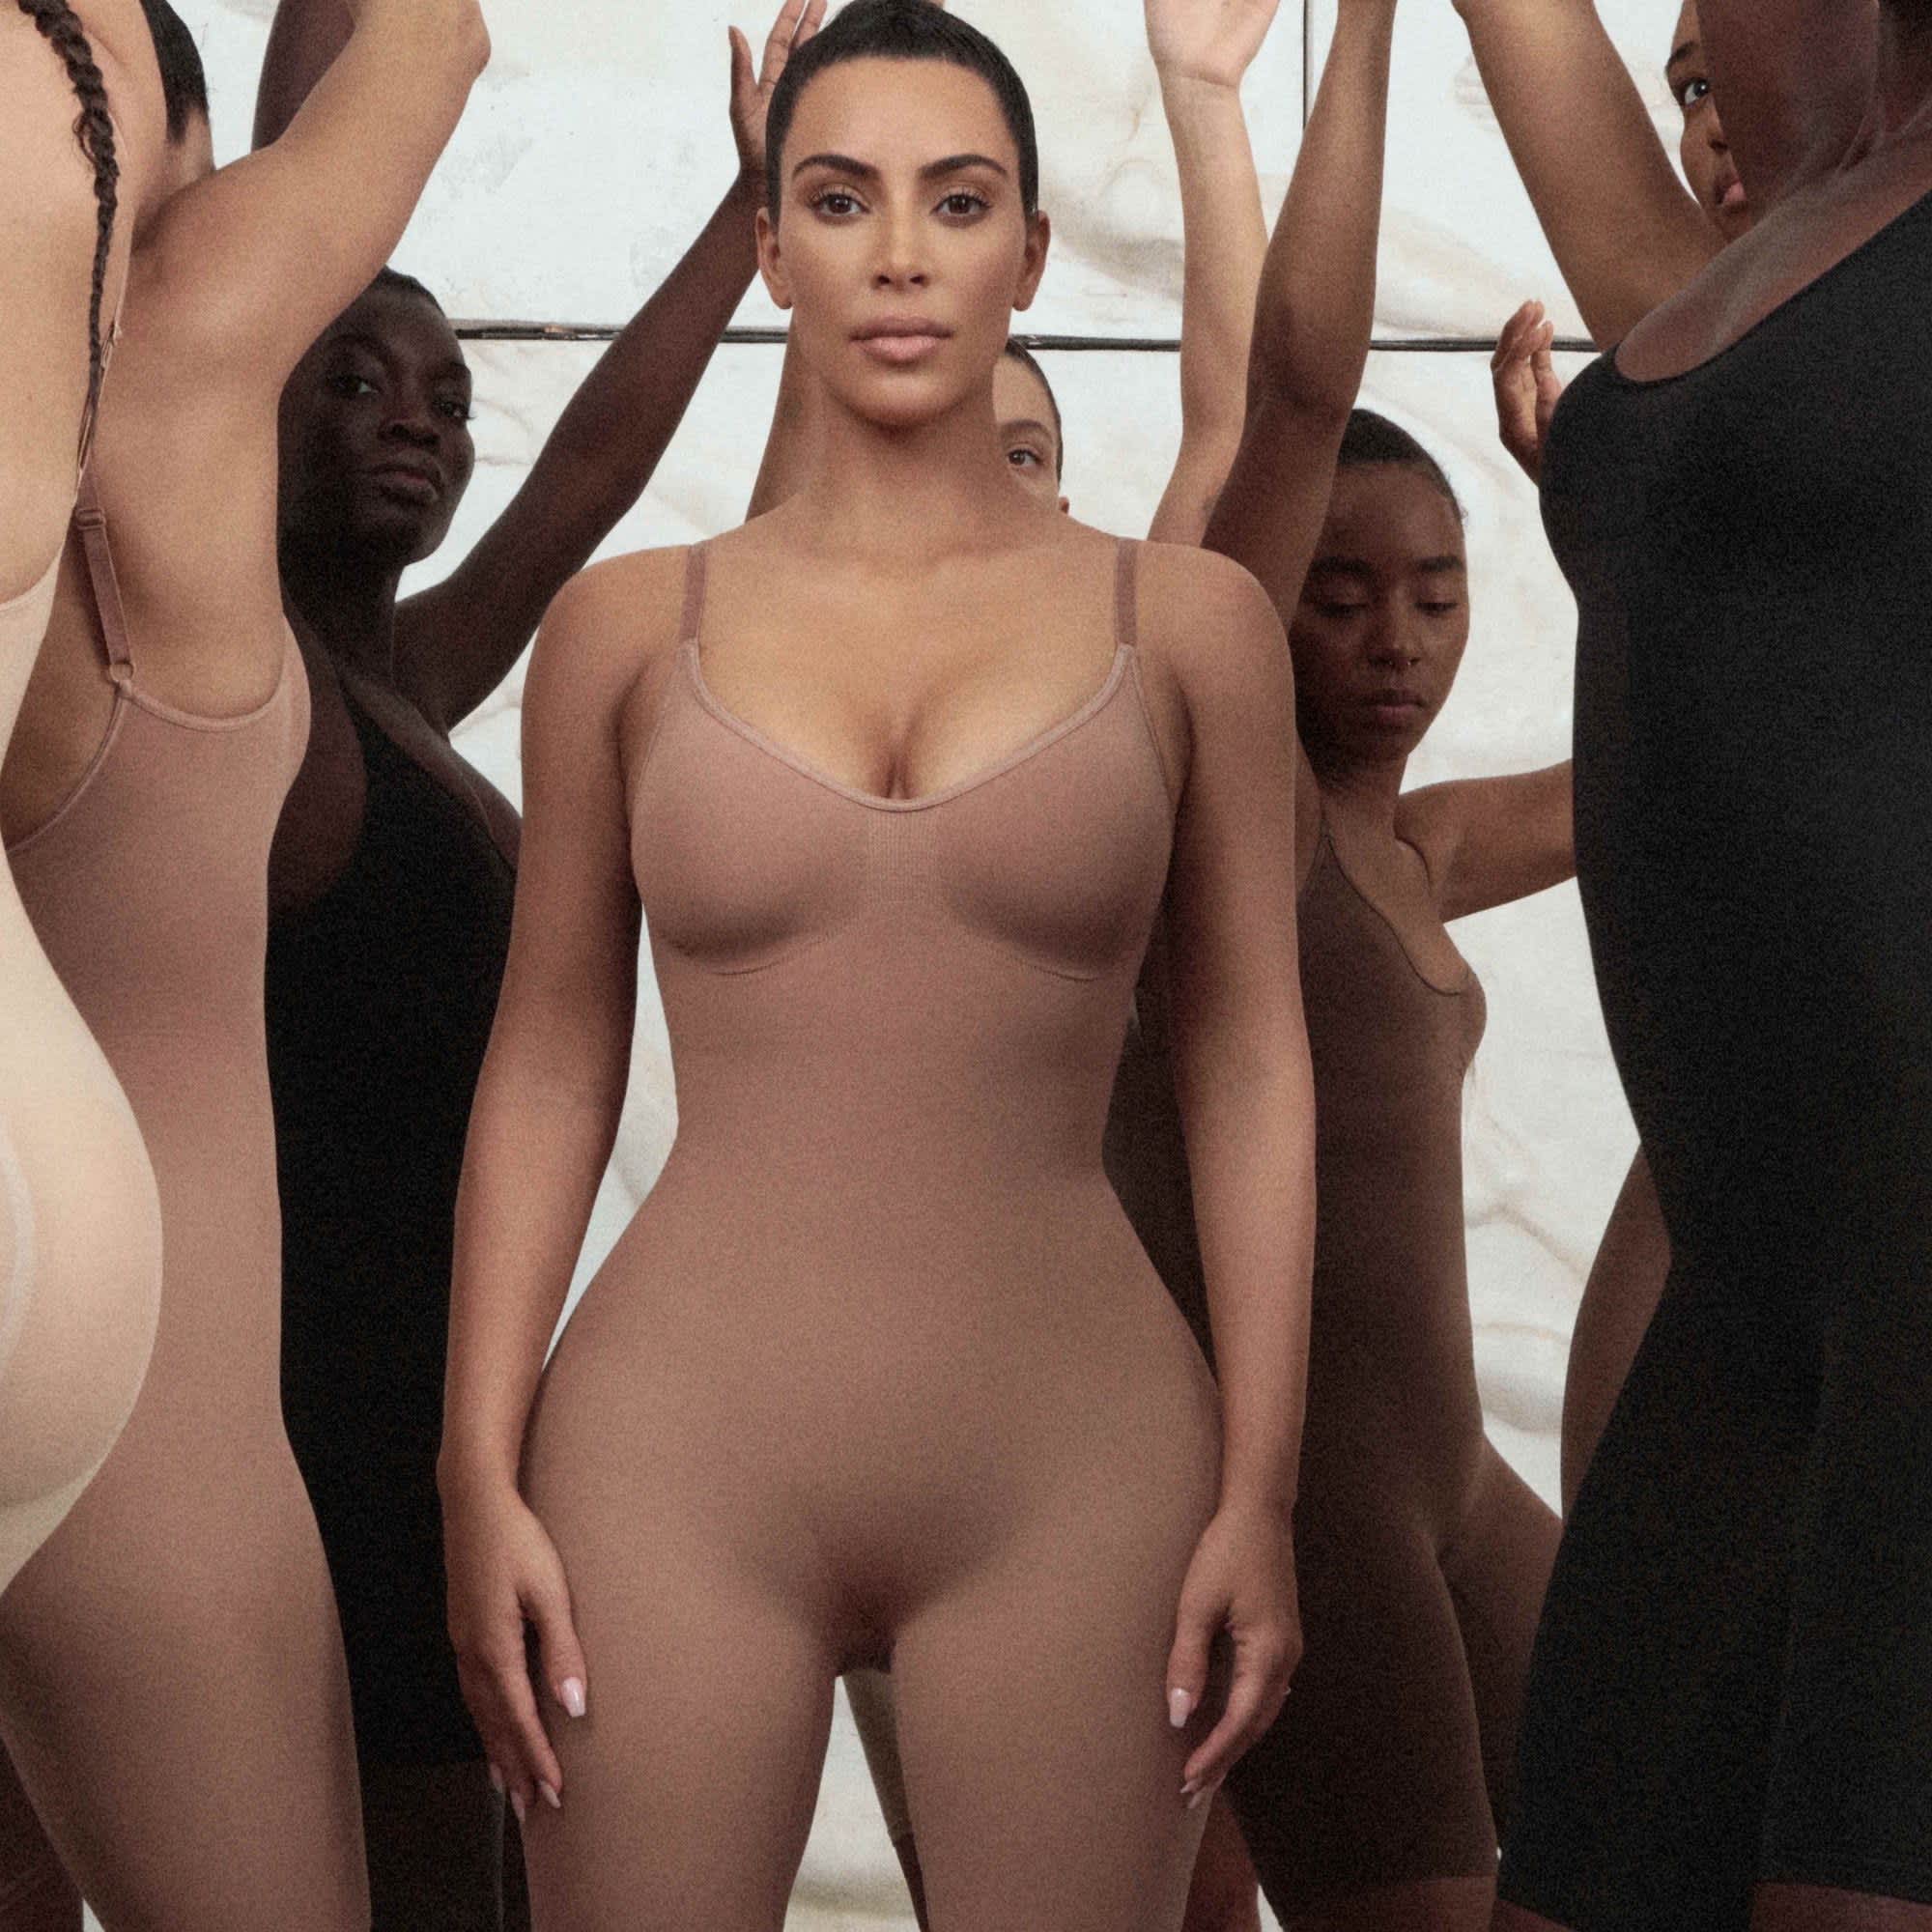 Kim Kardashian's SKIMS Set to Launch In Australia — Here's Where